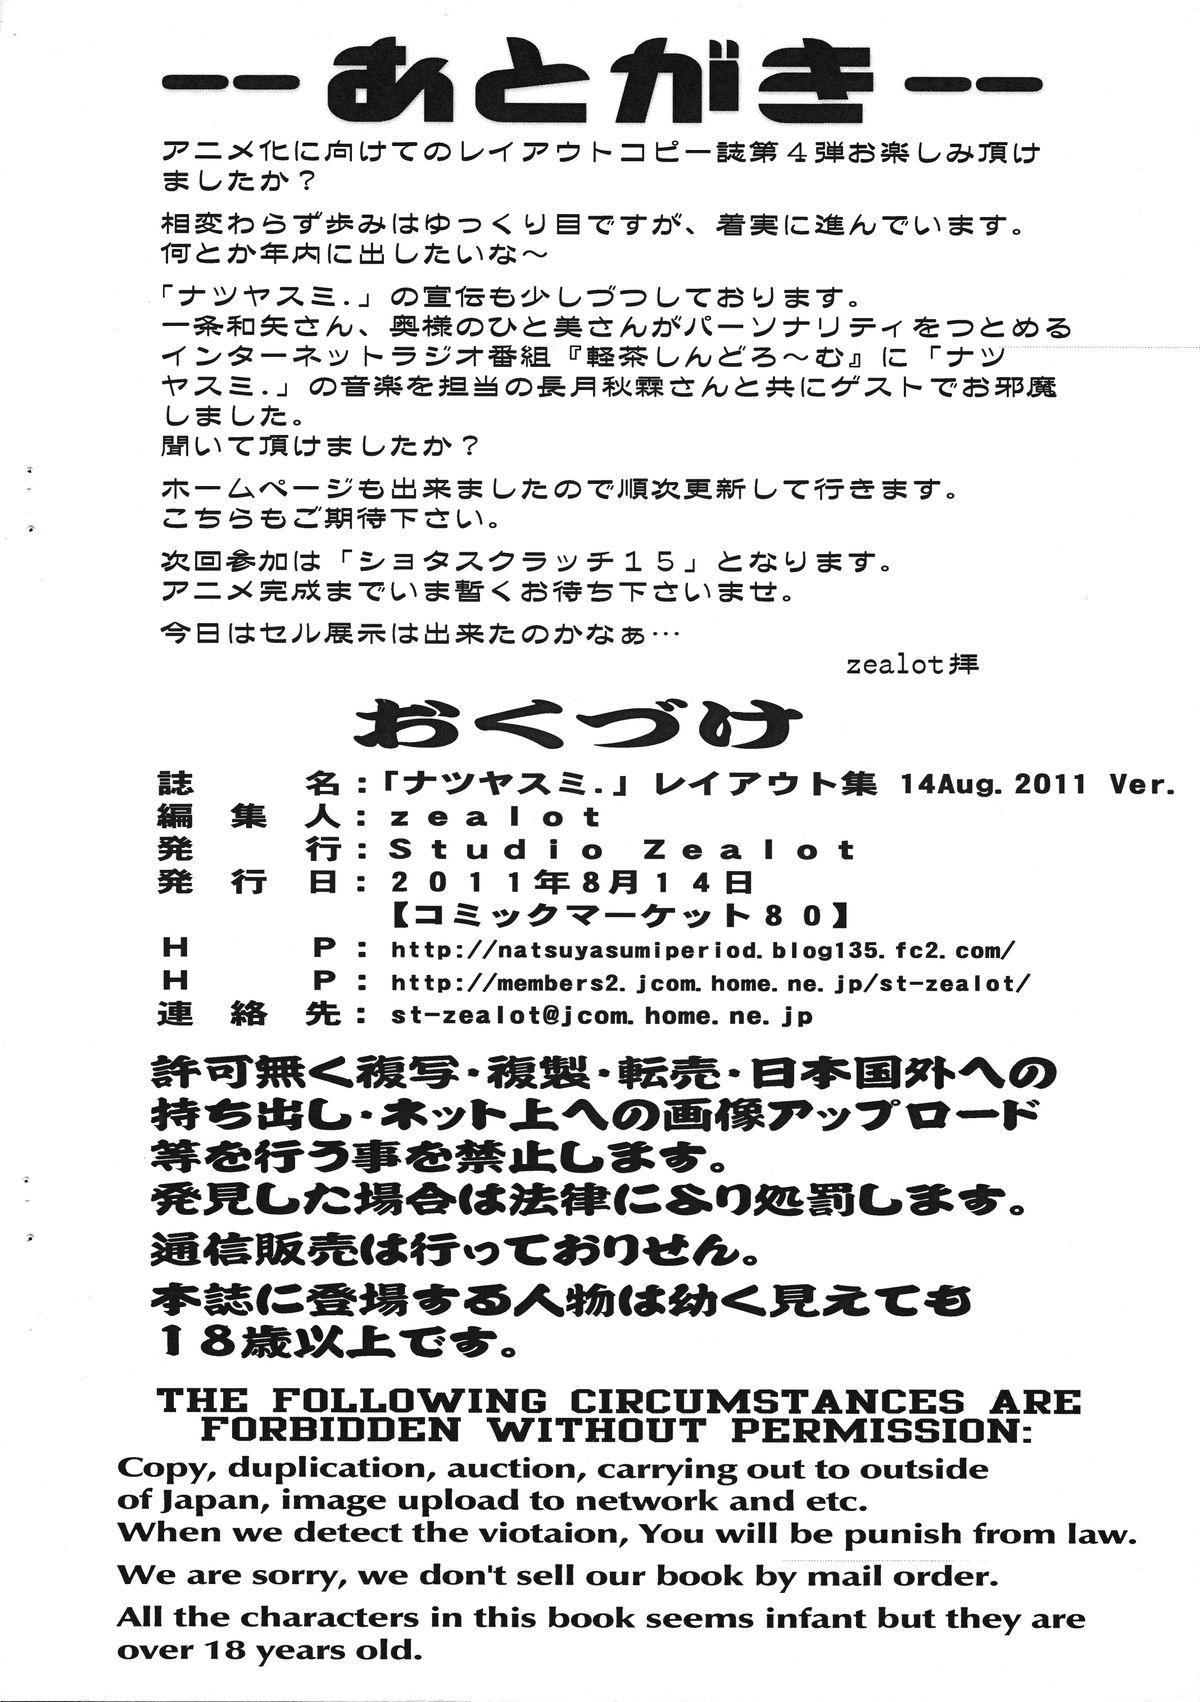 Natsuyasumi Period Layout Shuu 14 Aug. 2011 Ver. 10